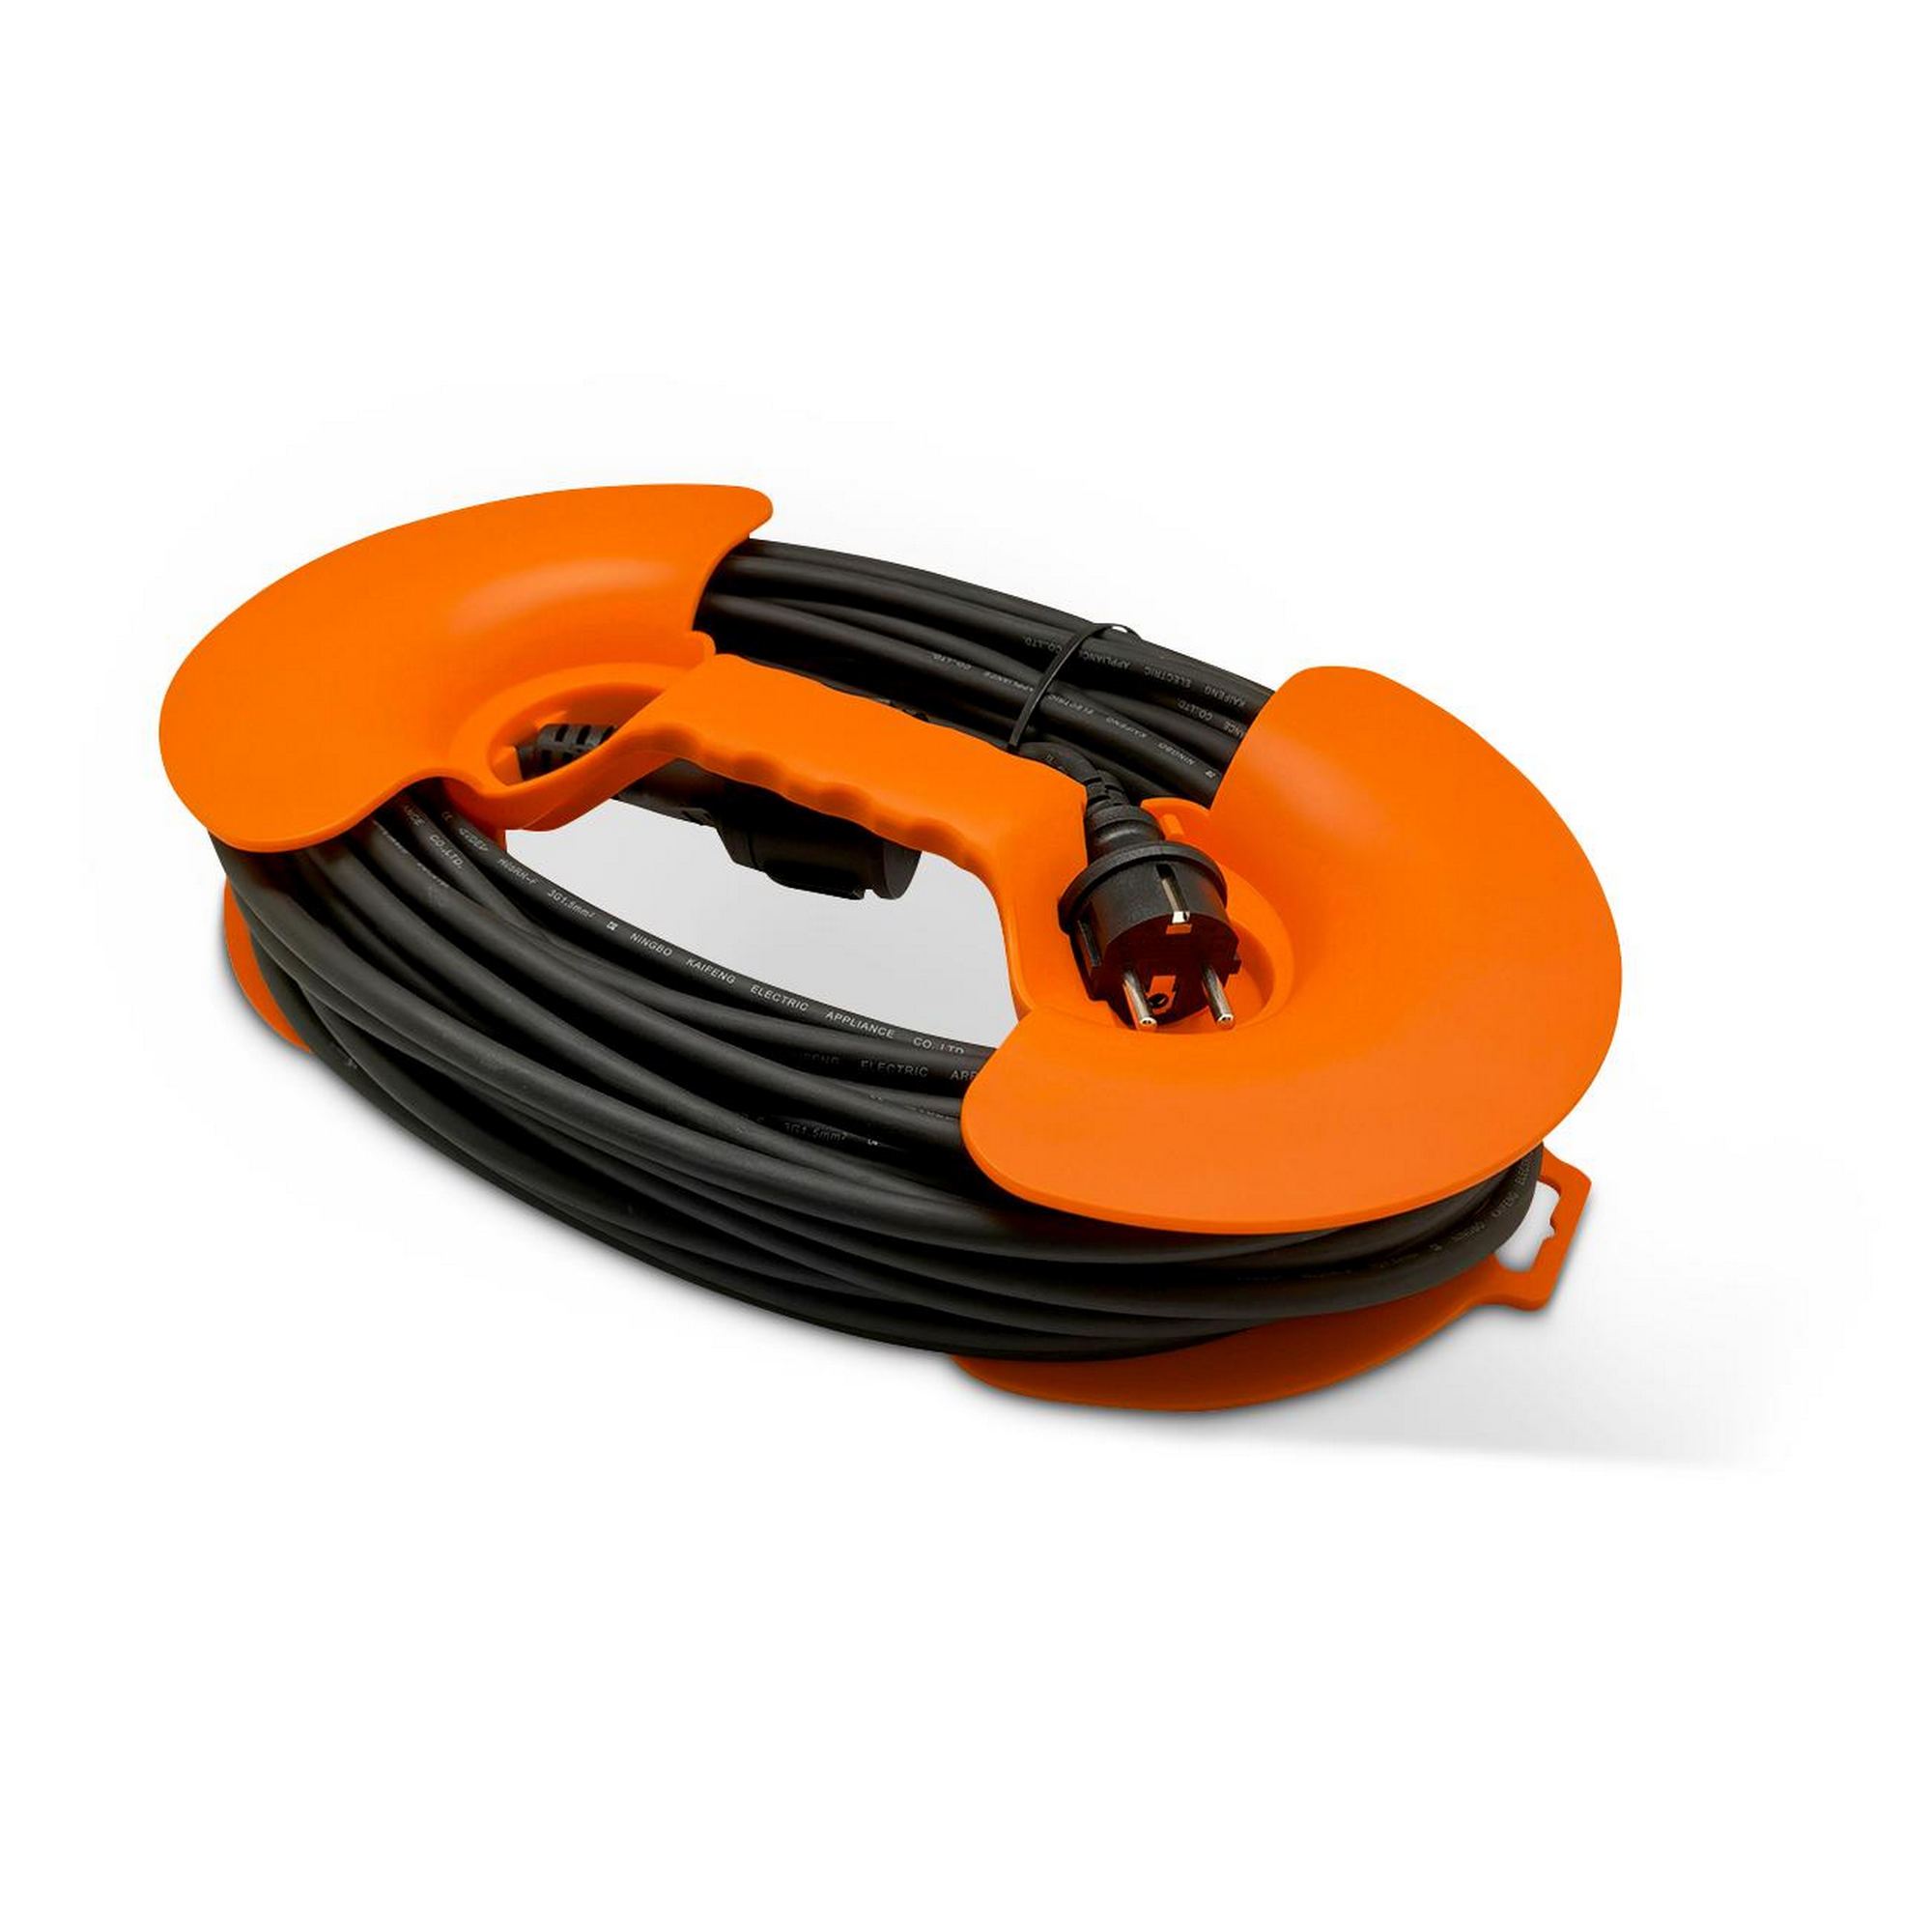 Verlängerungskabel 'H05RR-F' schwarz/orange 25 m + product picture